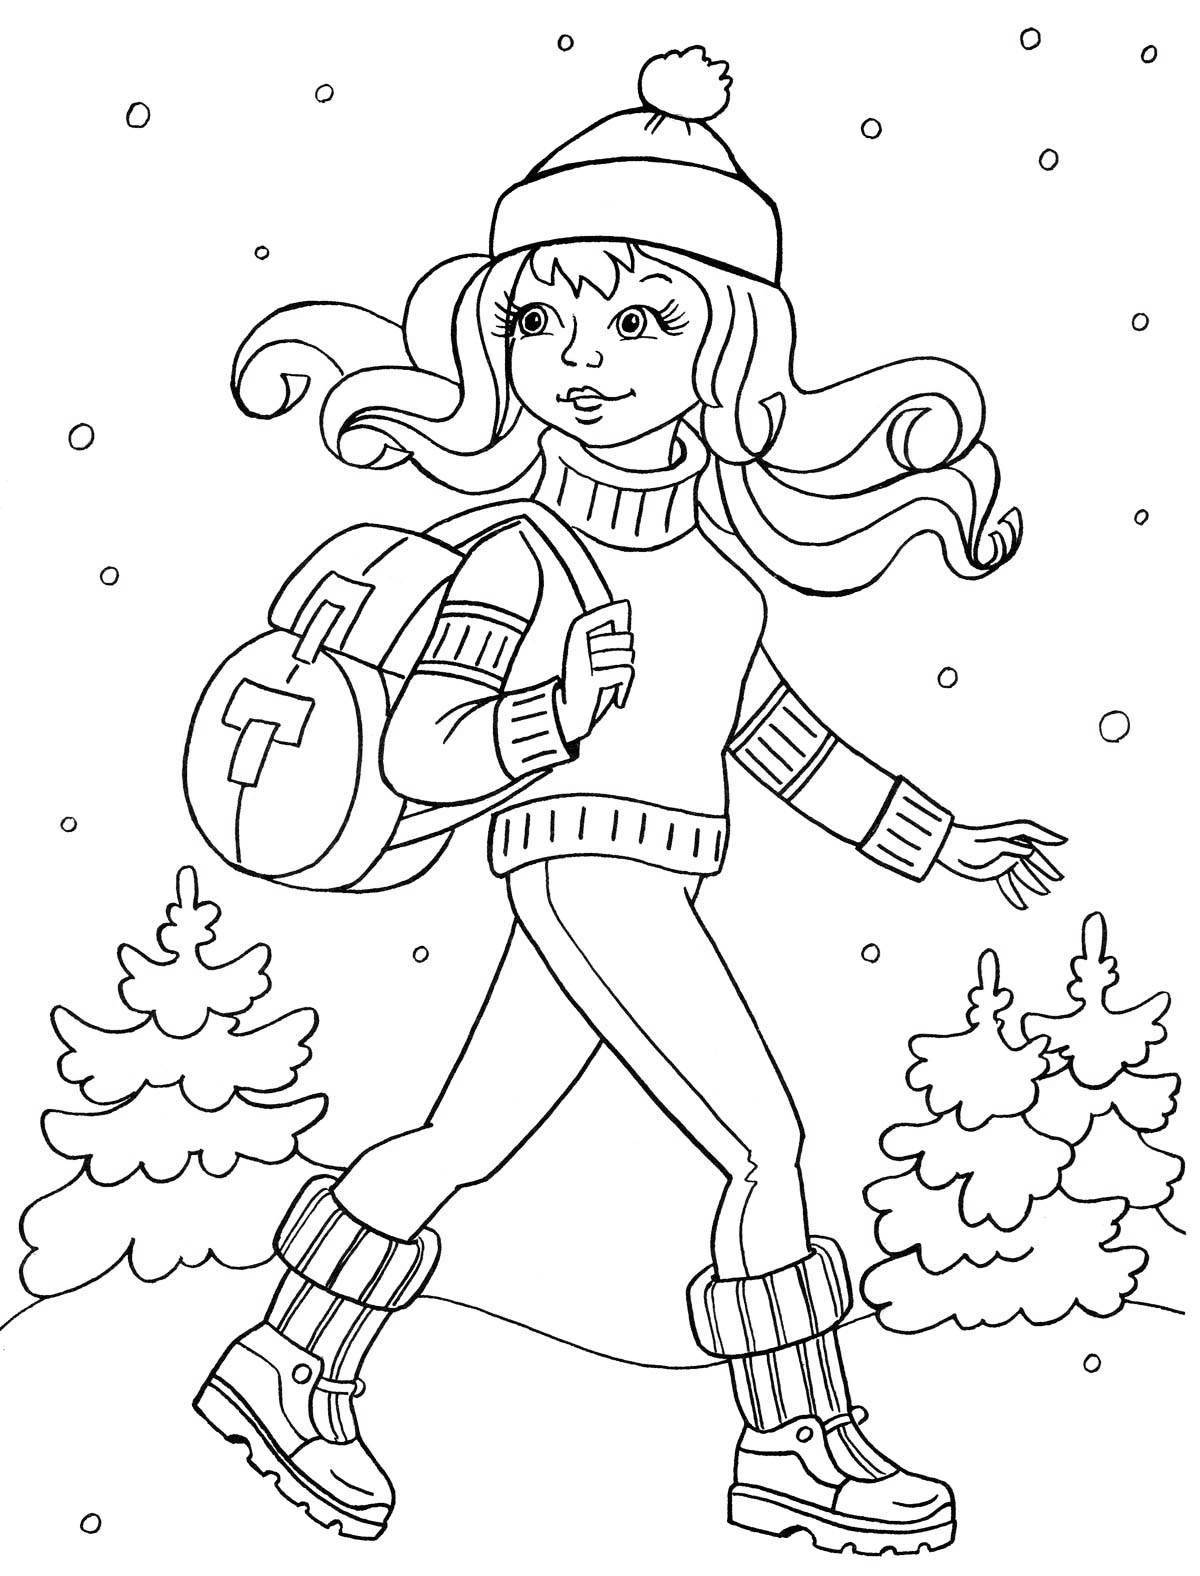 Забавная раскраска девушка в зимней одежде